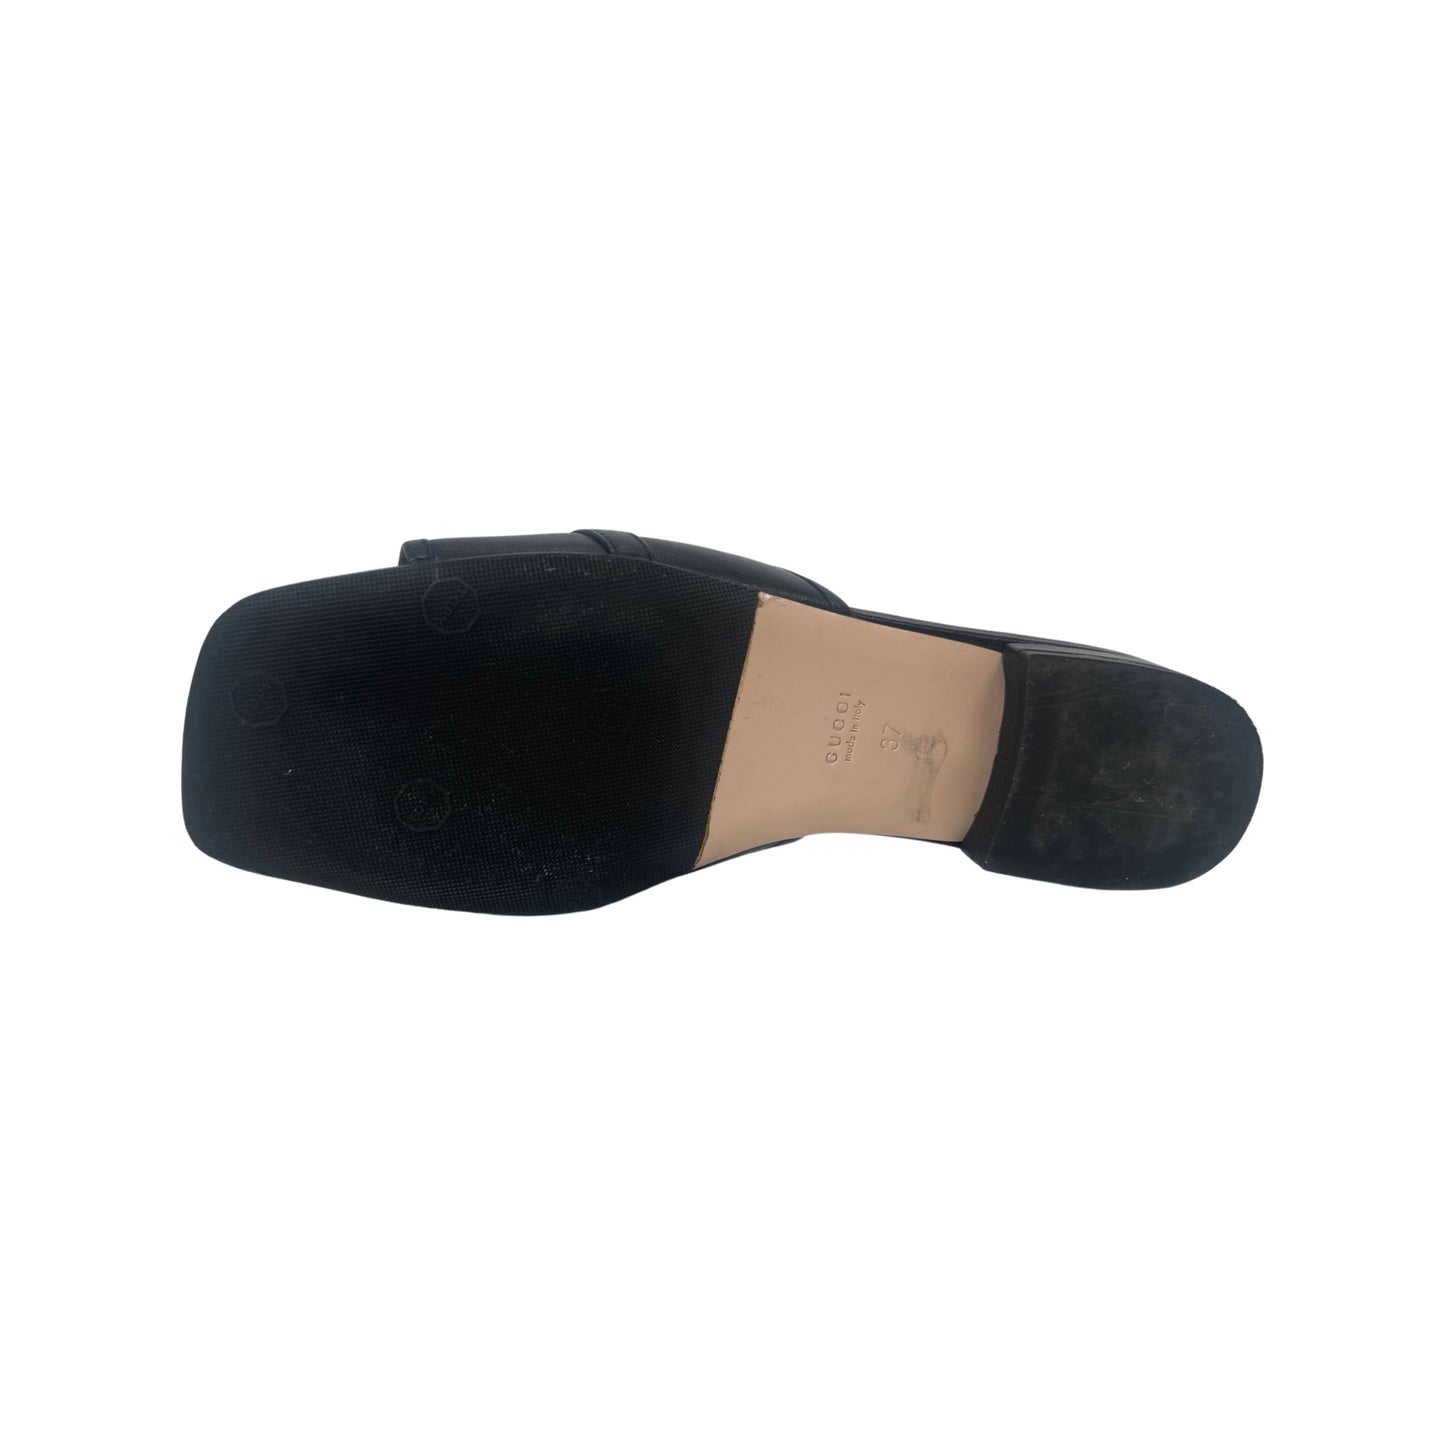 Gucci Horsebit Accent Leather Slides (Size 37)